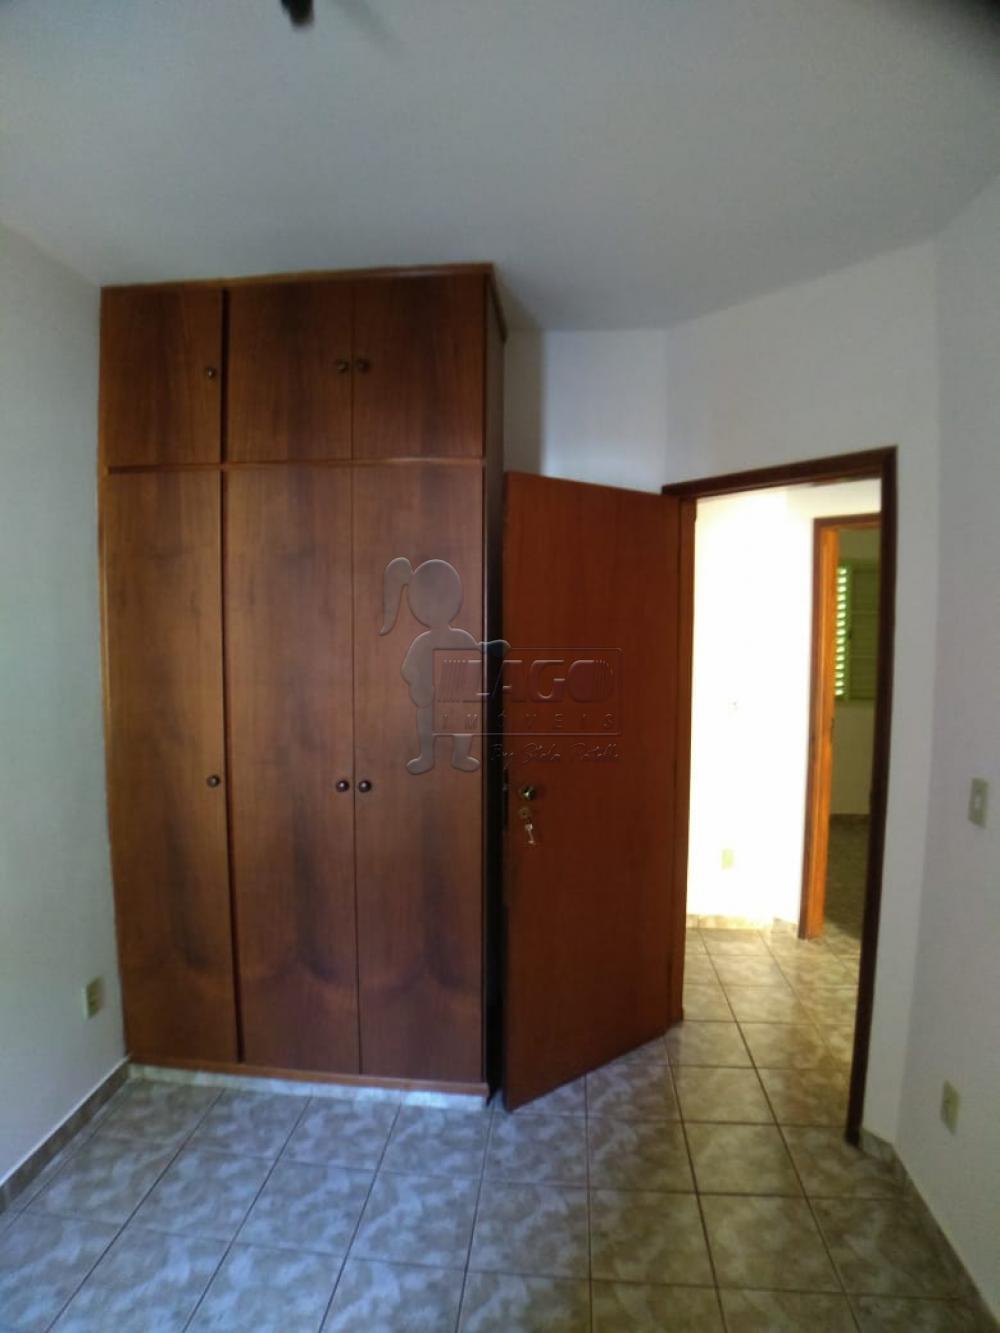 Alugar Apartamentos / Padrão em Ribeirão Preto R$ 1.550,00 - Foto 6